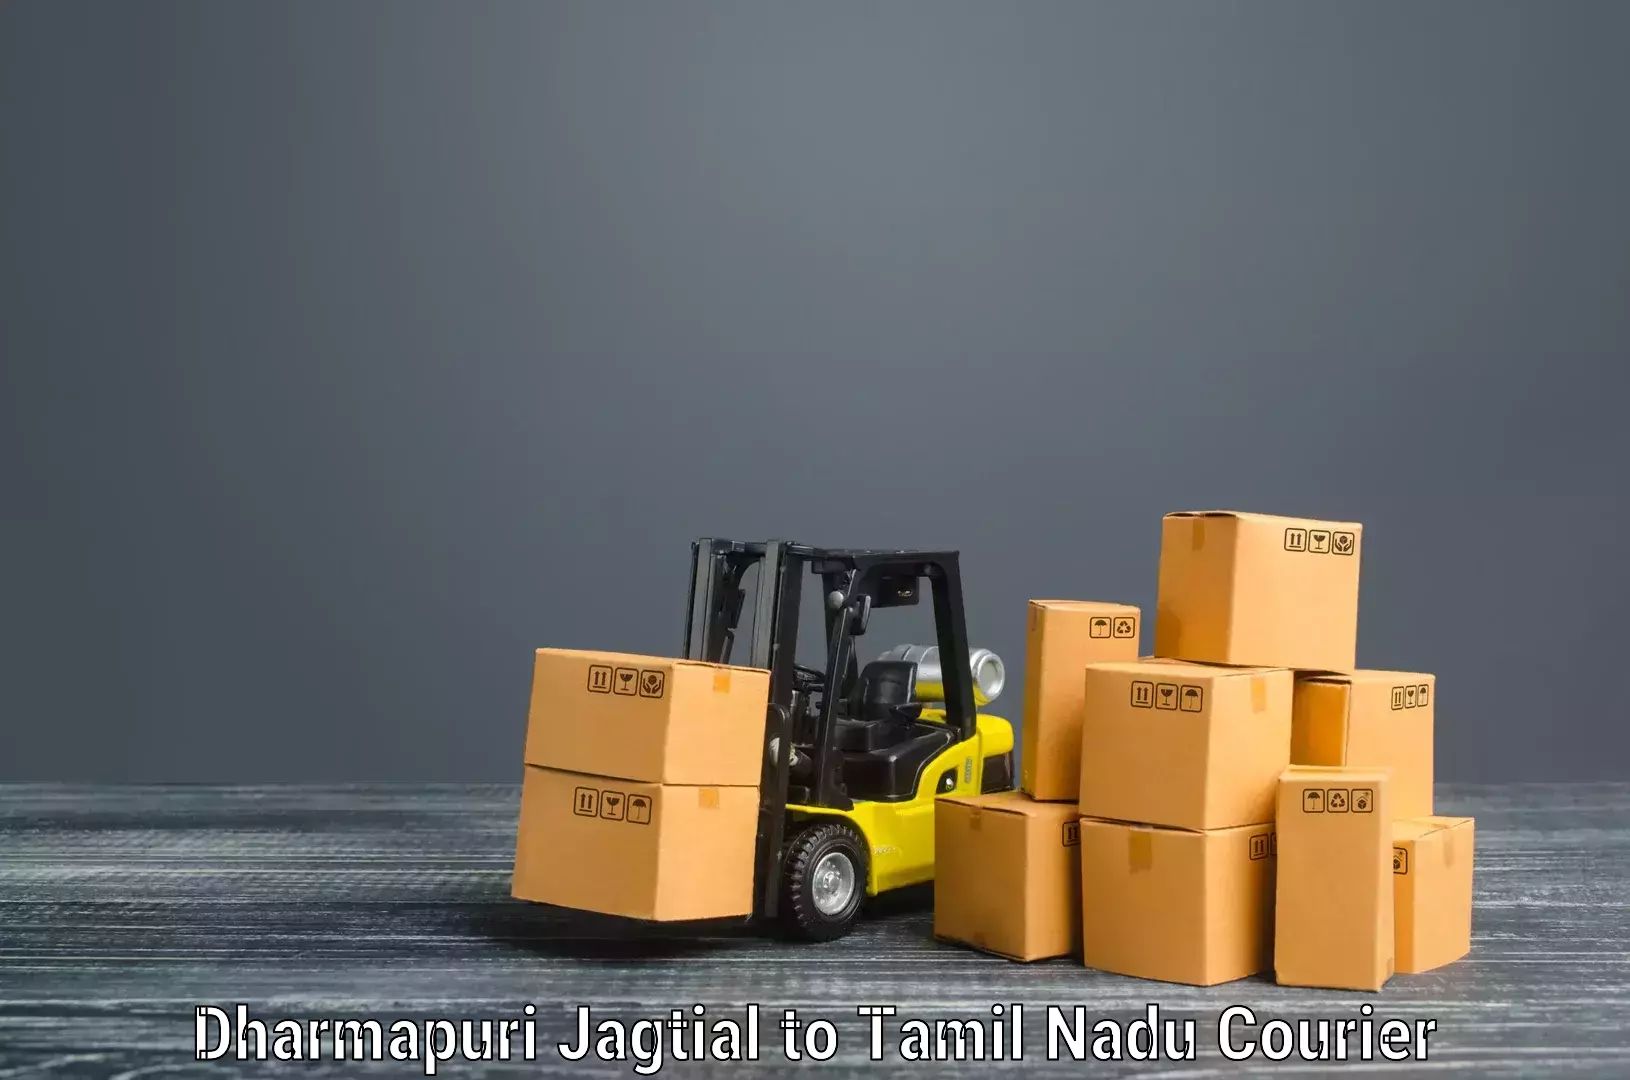 Furniture moving experts Dharmapuri Jagtial to Kagithapuram